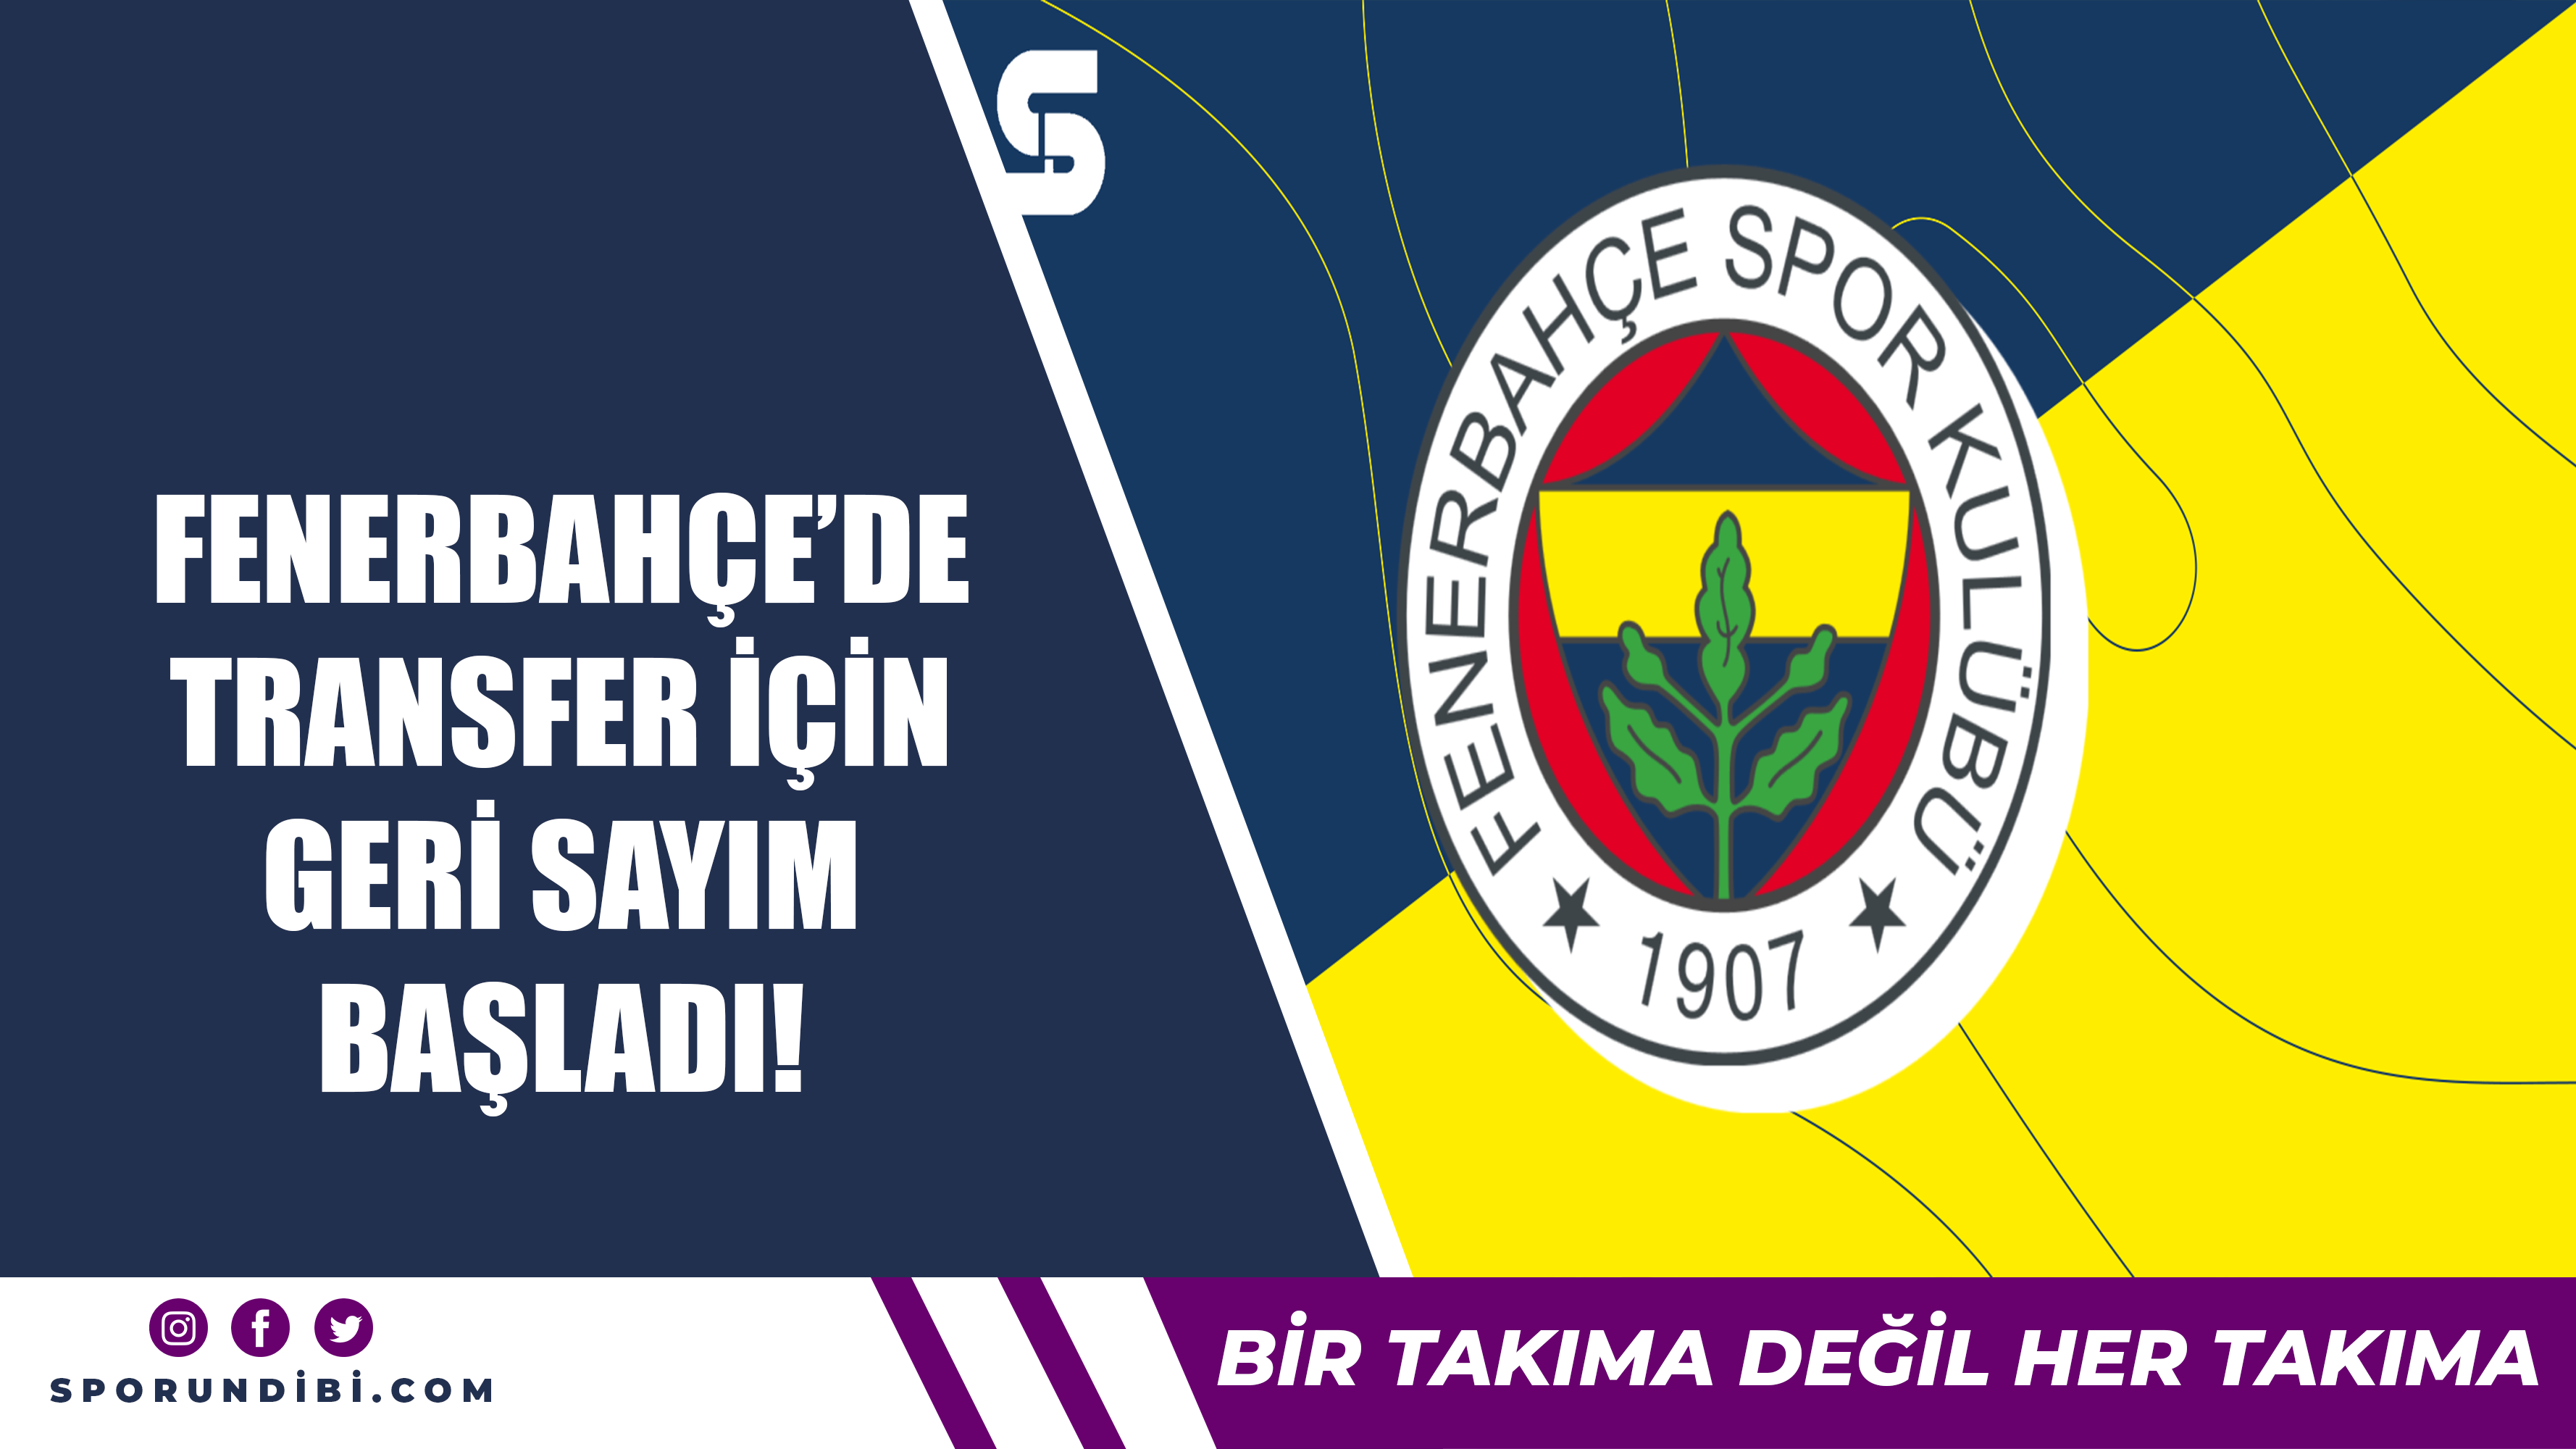 Fenerbahçe'de transfer için geri sayım başladı!